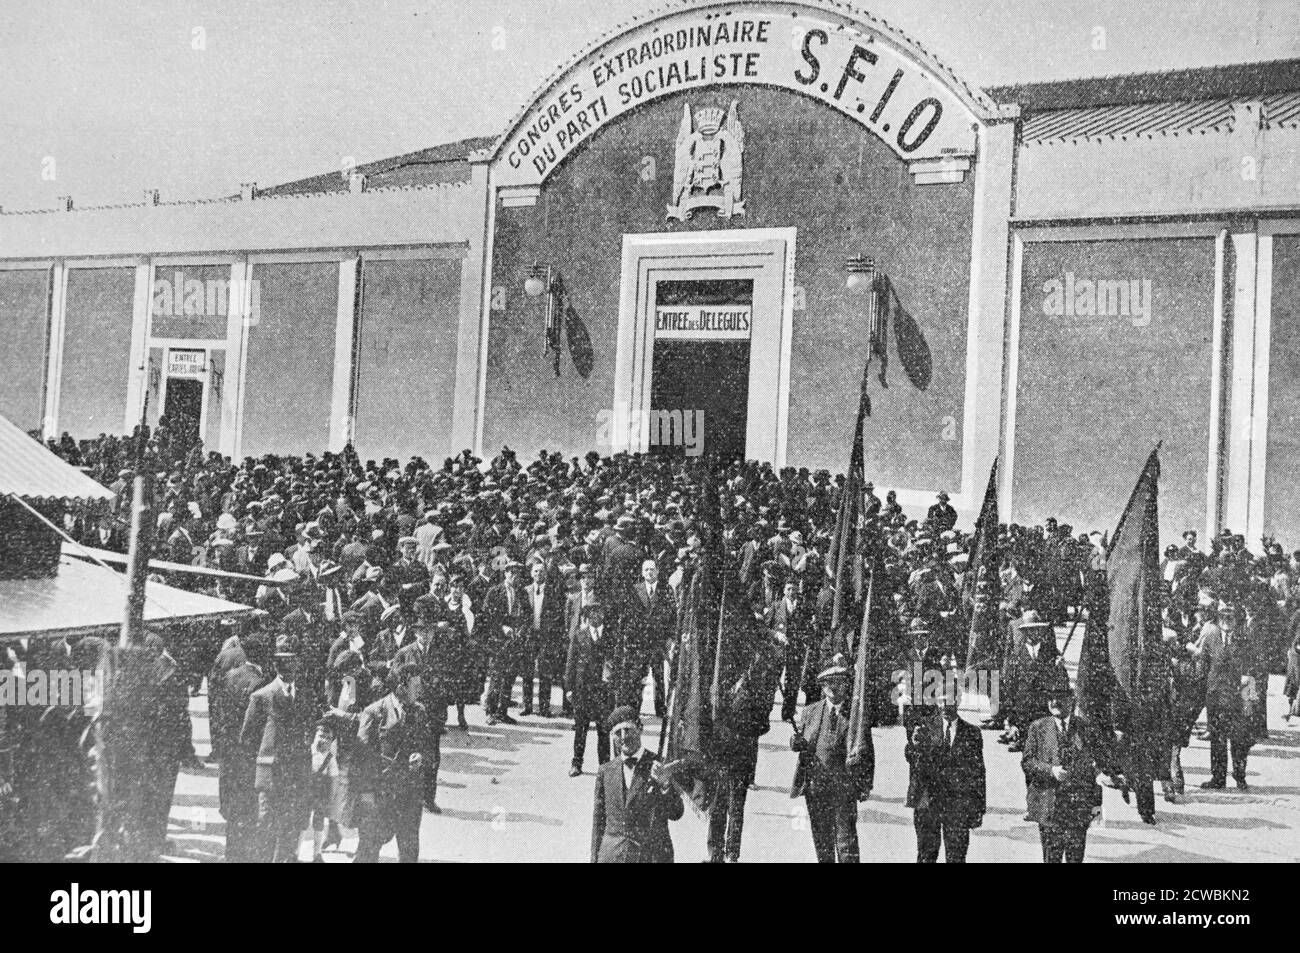 Foto in bianco e nero della Conferenza socialista di Avignone, maggio 1933. Foto Stock